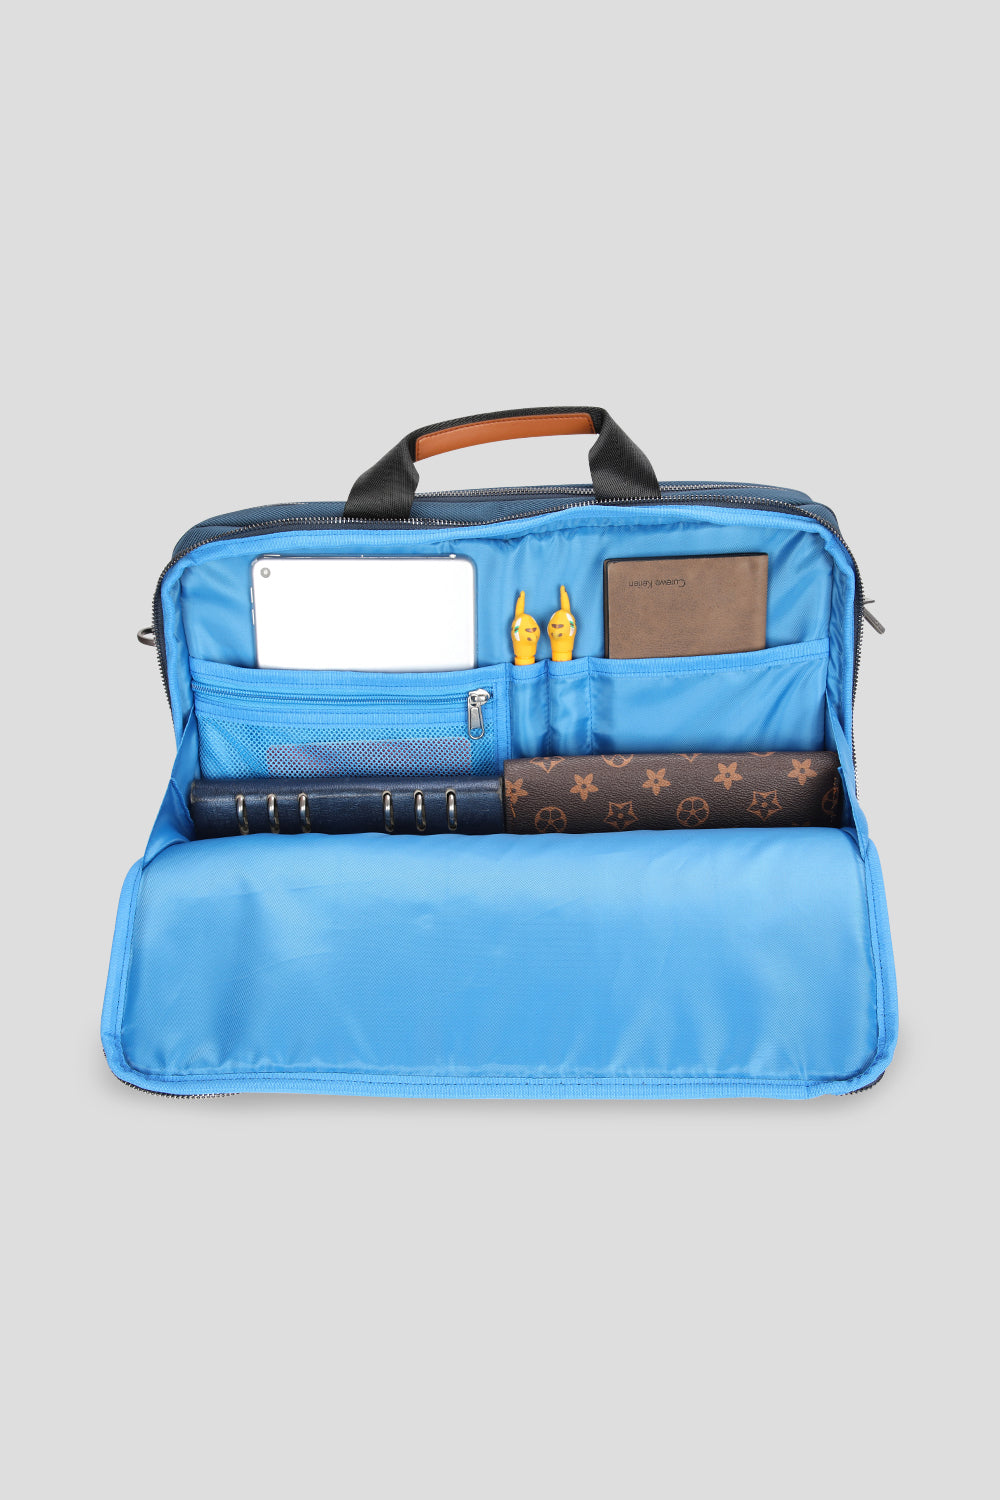 Euston office laptop bag in navy colour for men from oswin hyde open bag